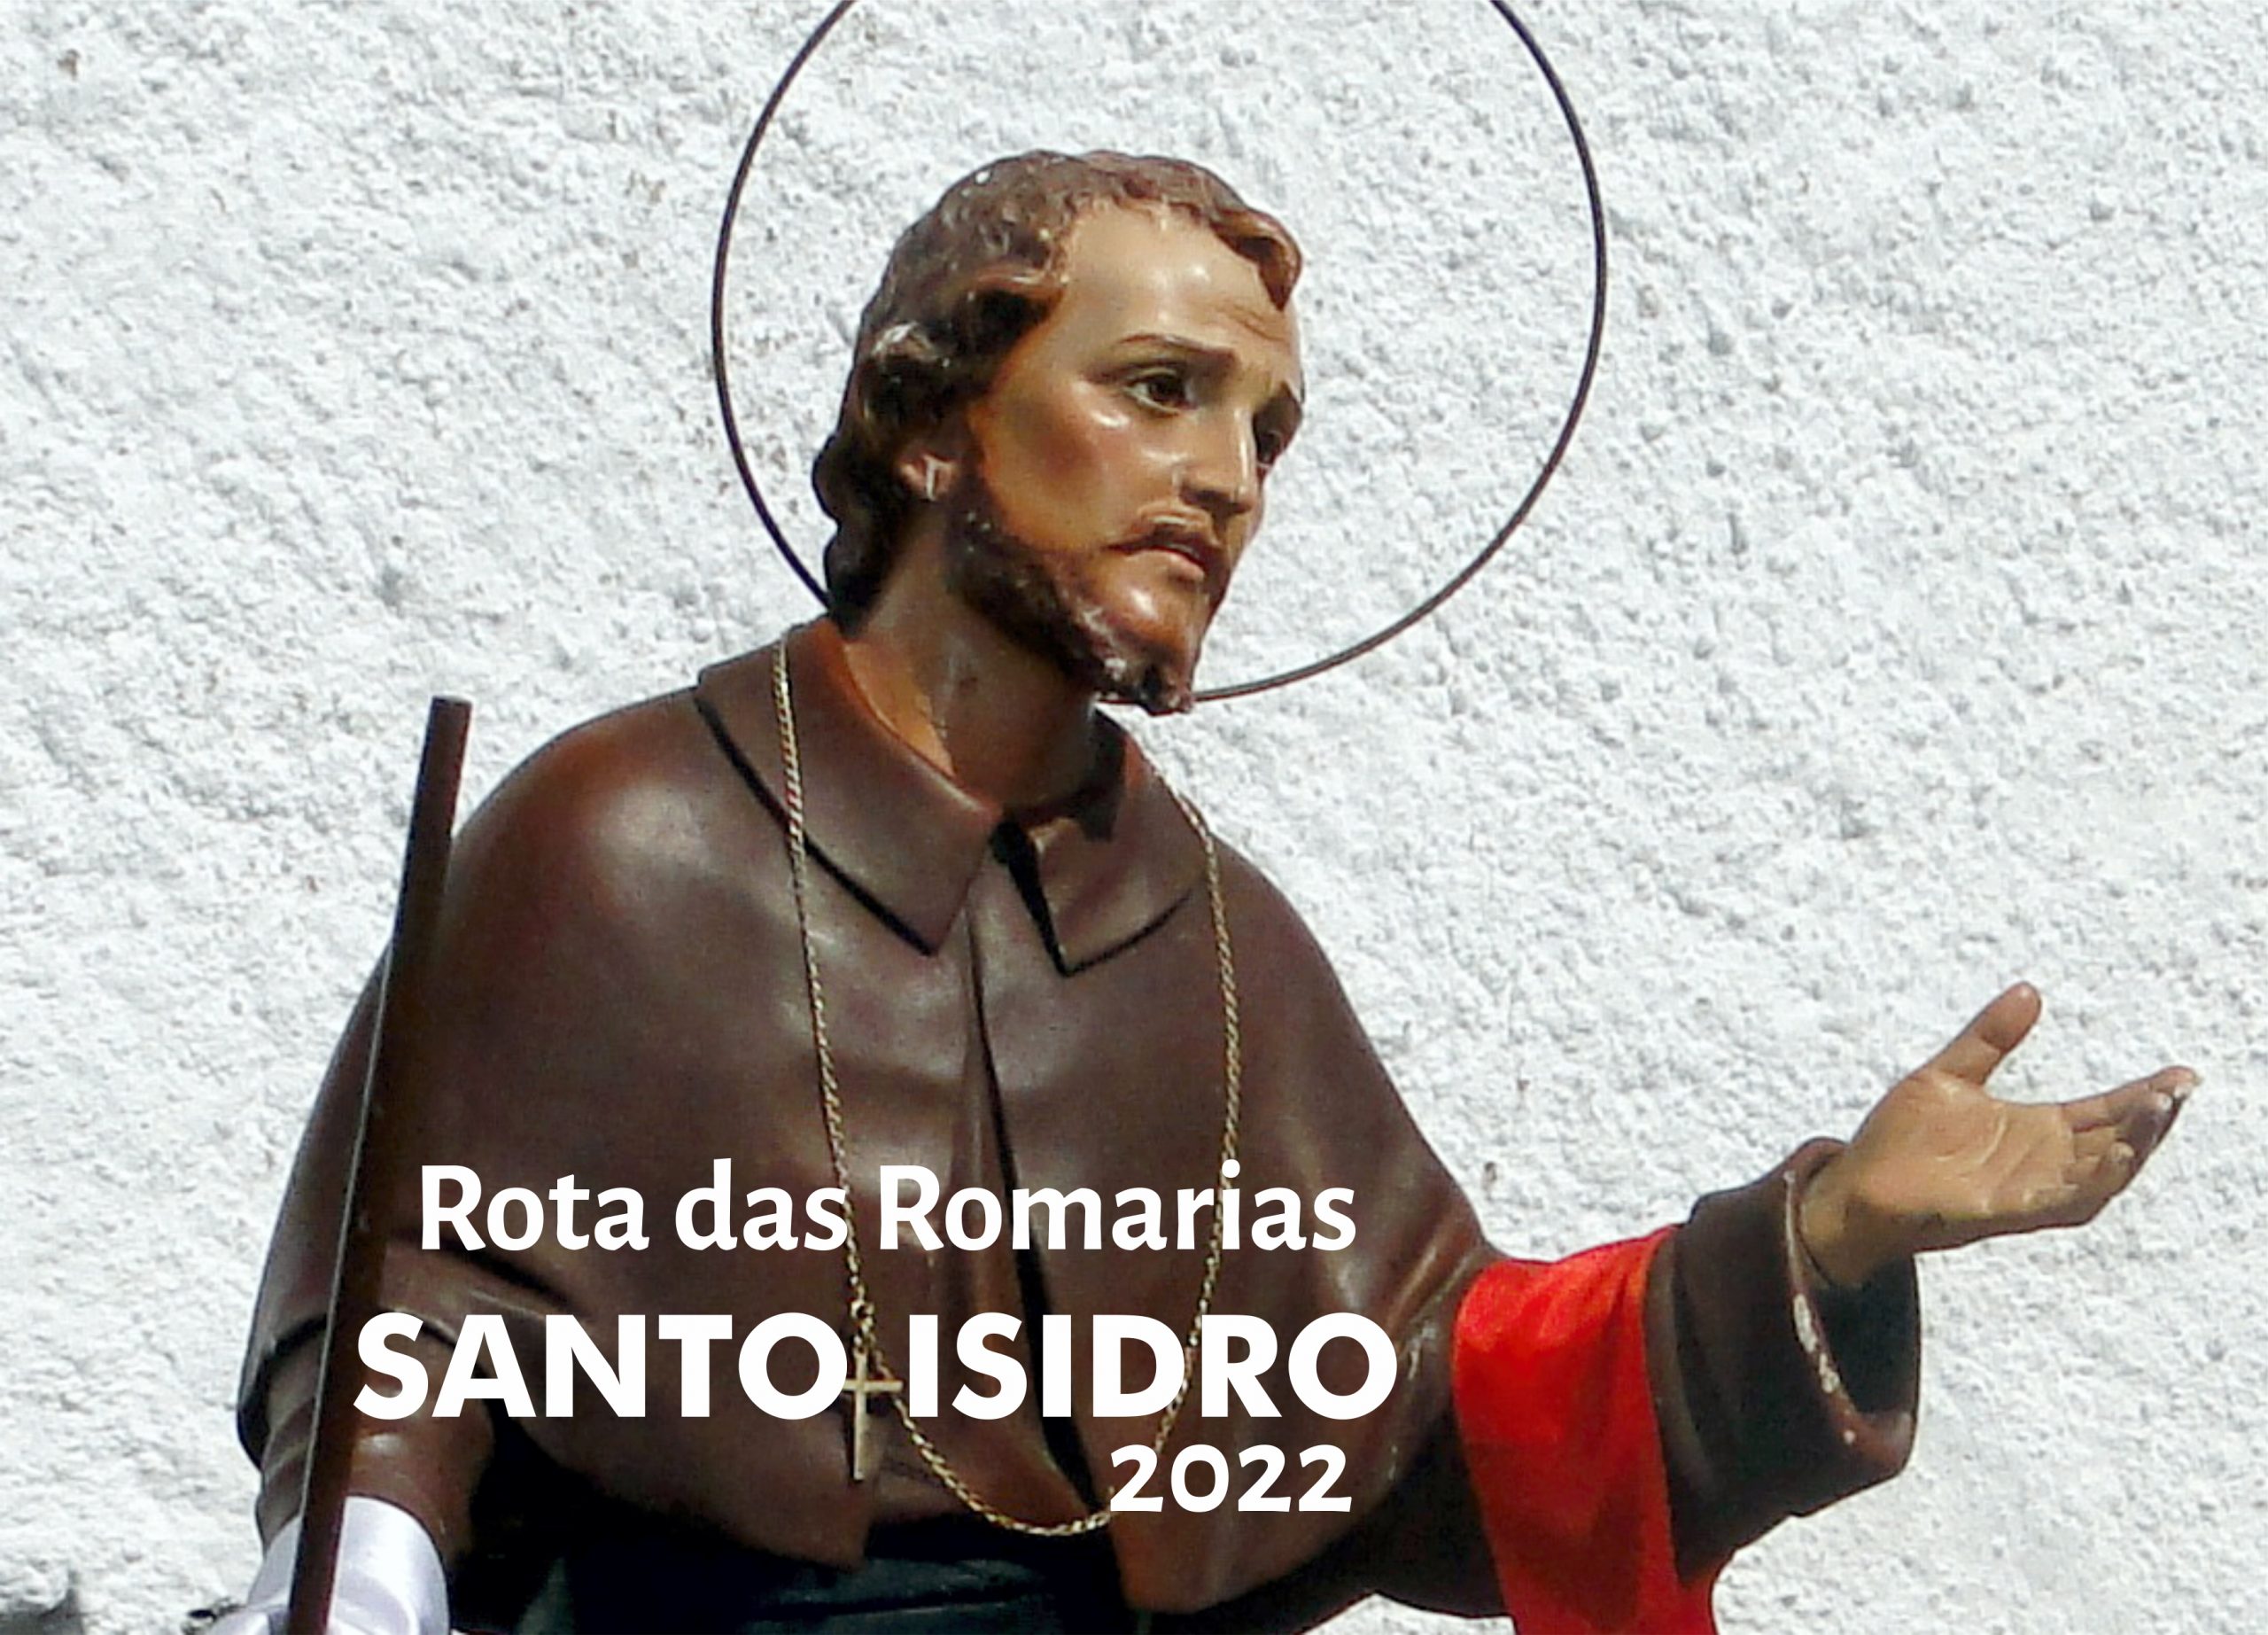 Rota das Romarias Santo Isidro 2022